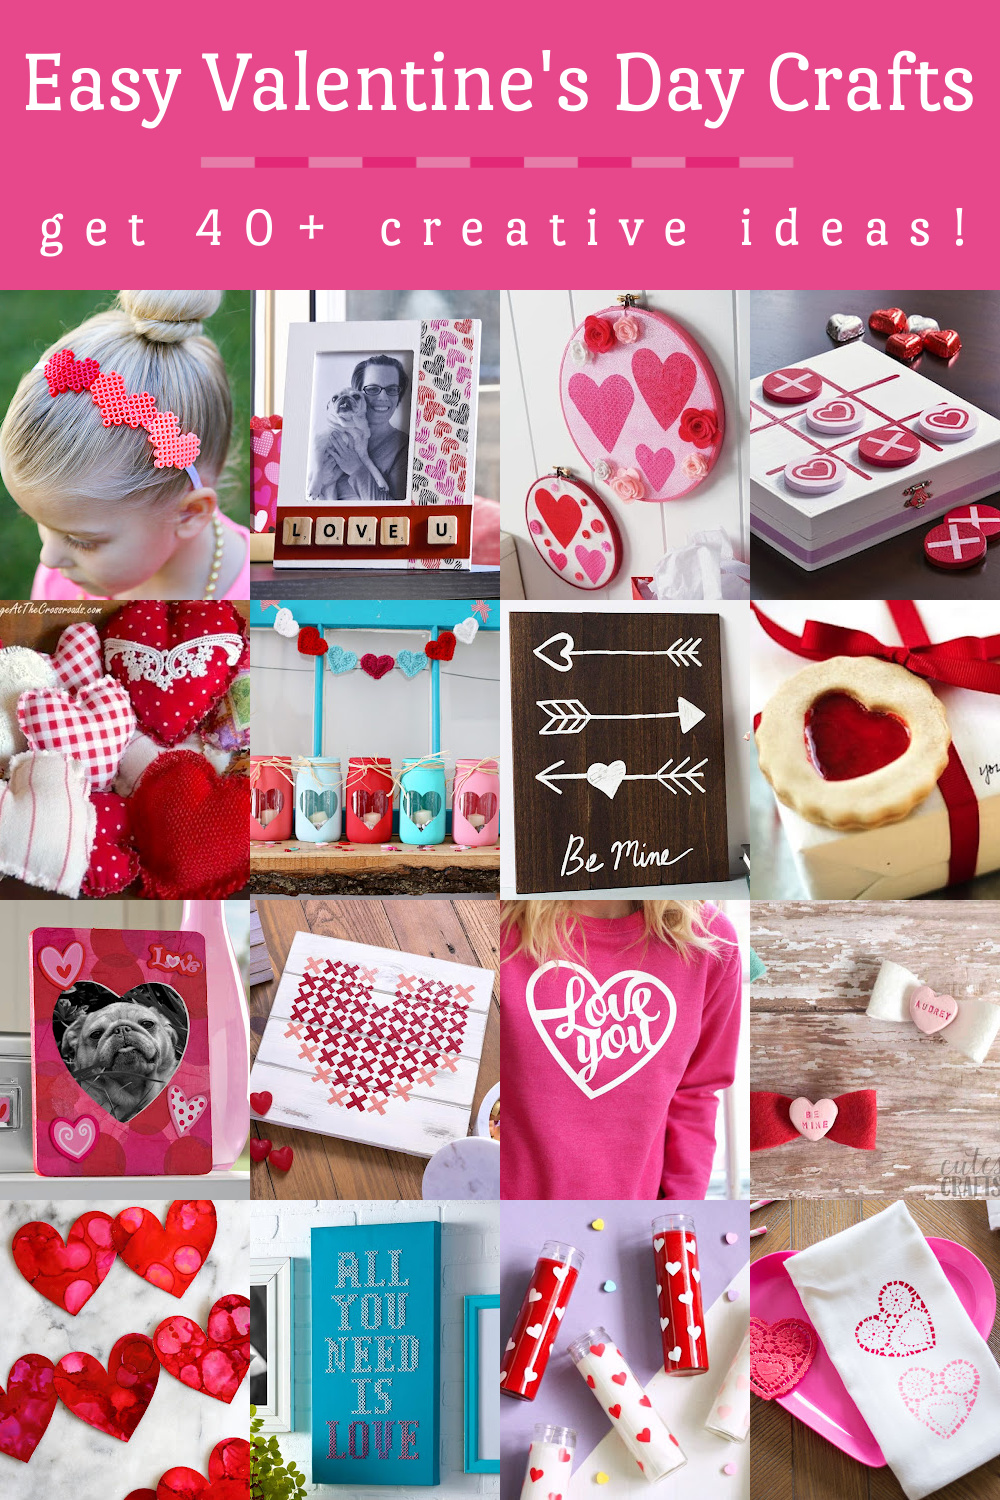 Easy Valentine's Day crafts